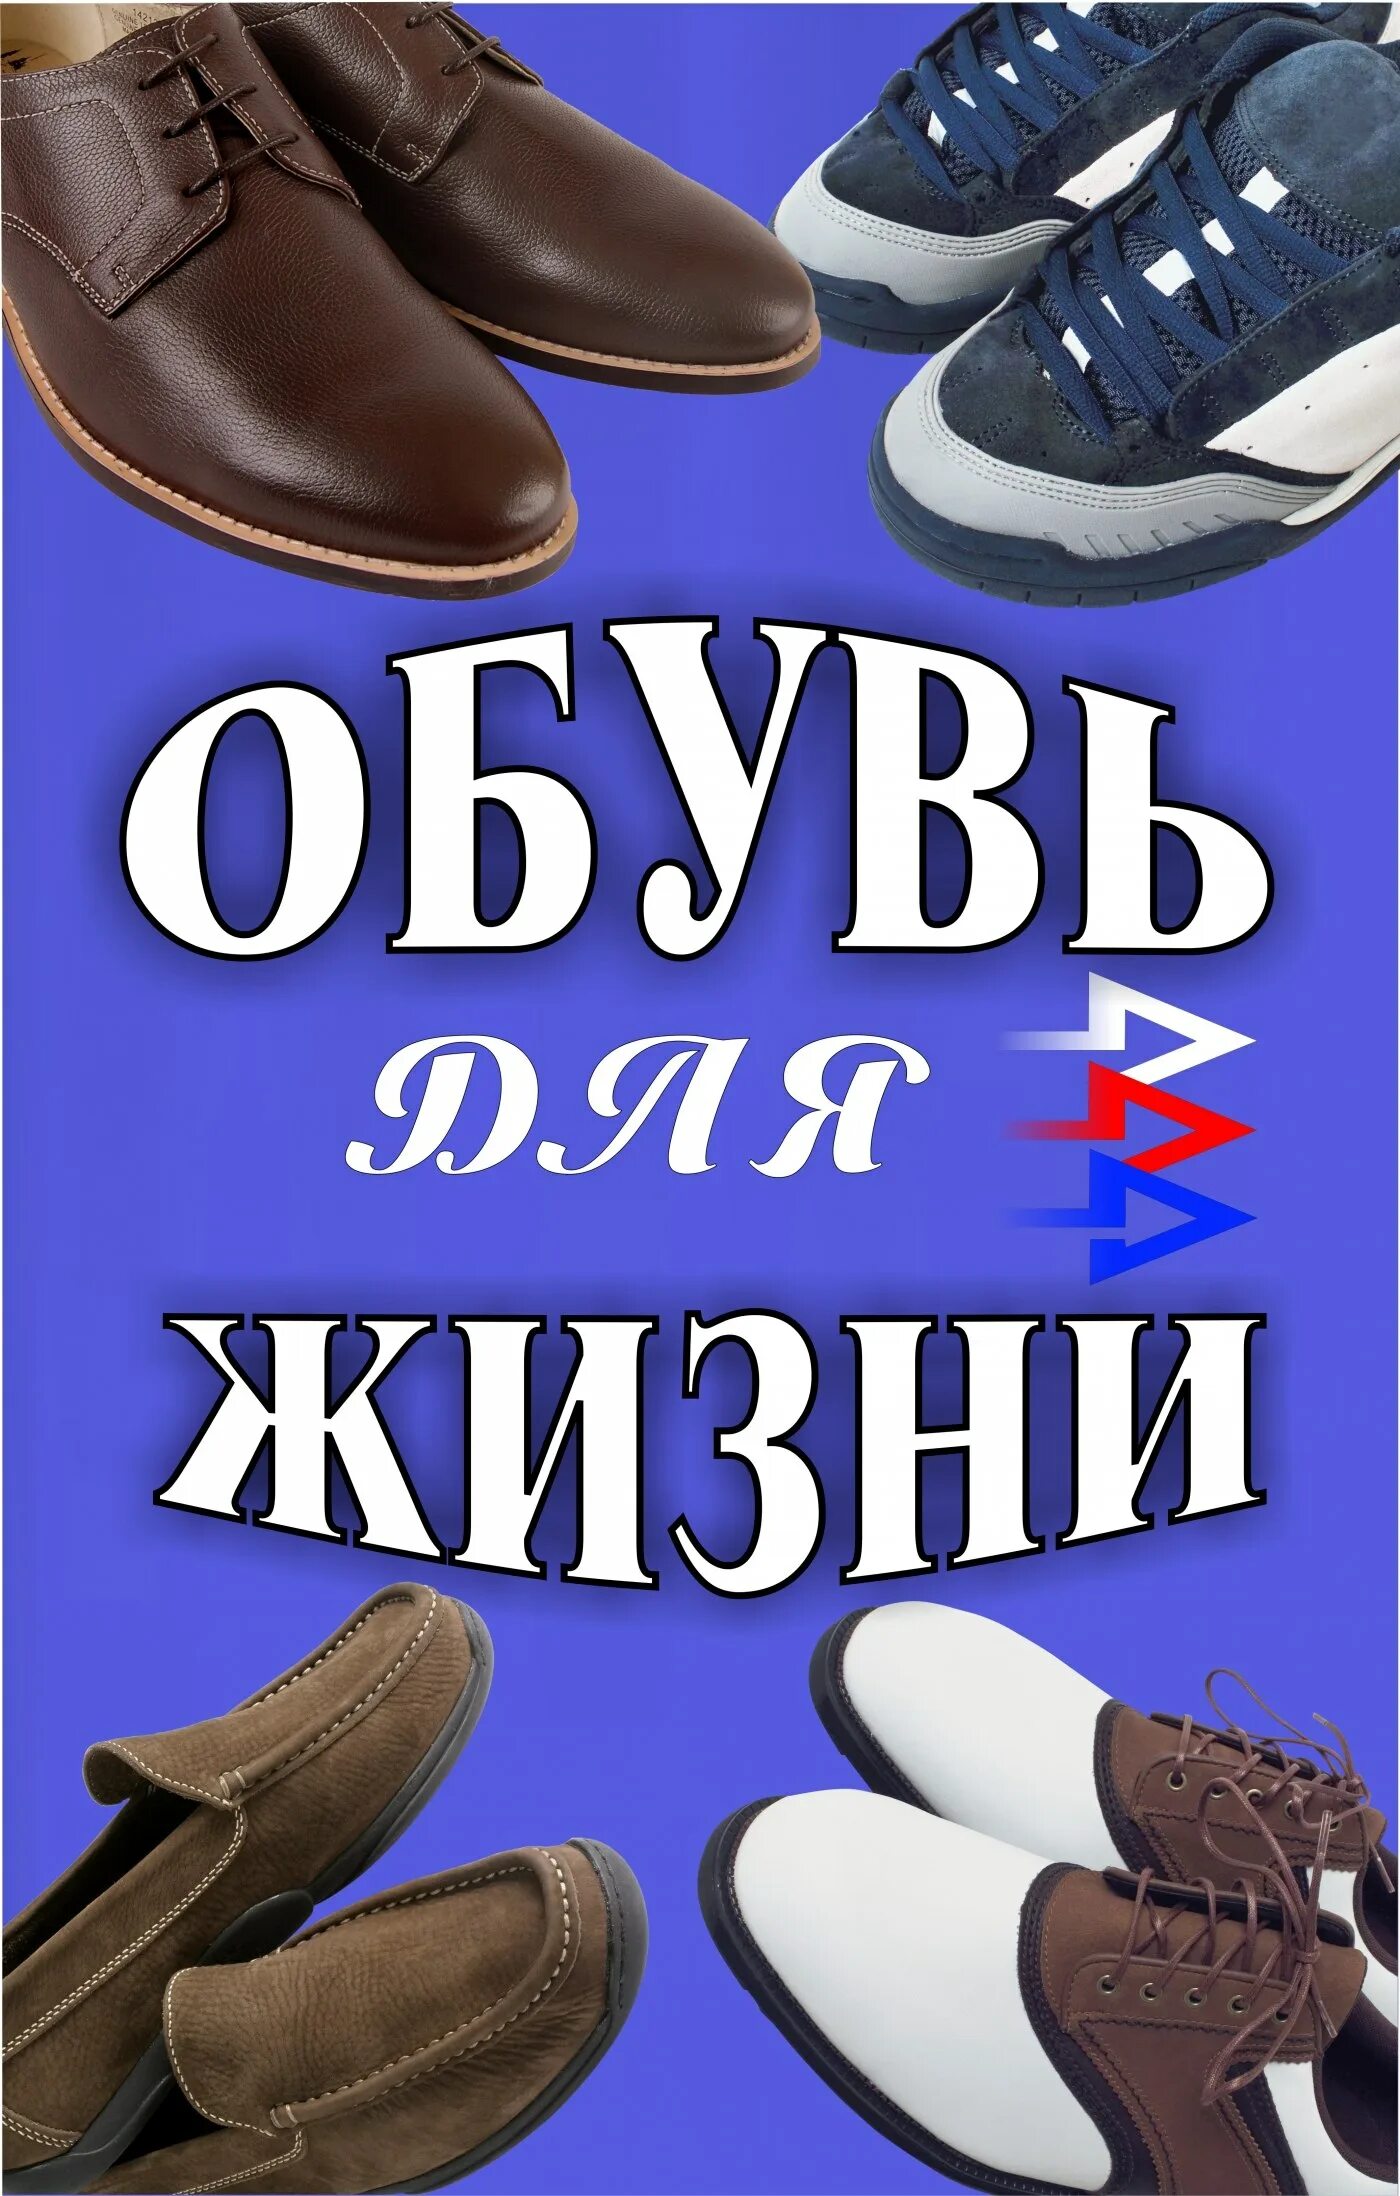 Реклама обуви. Магазин обуви баннер. Баннер обувного магазина. Рекламный баннер обуви. Озон магазин обуви мужской